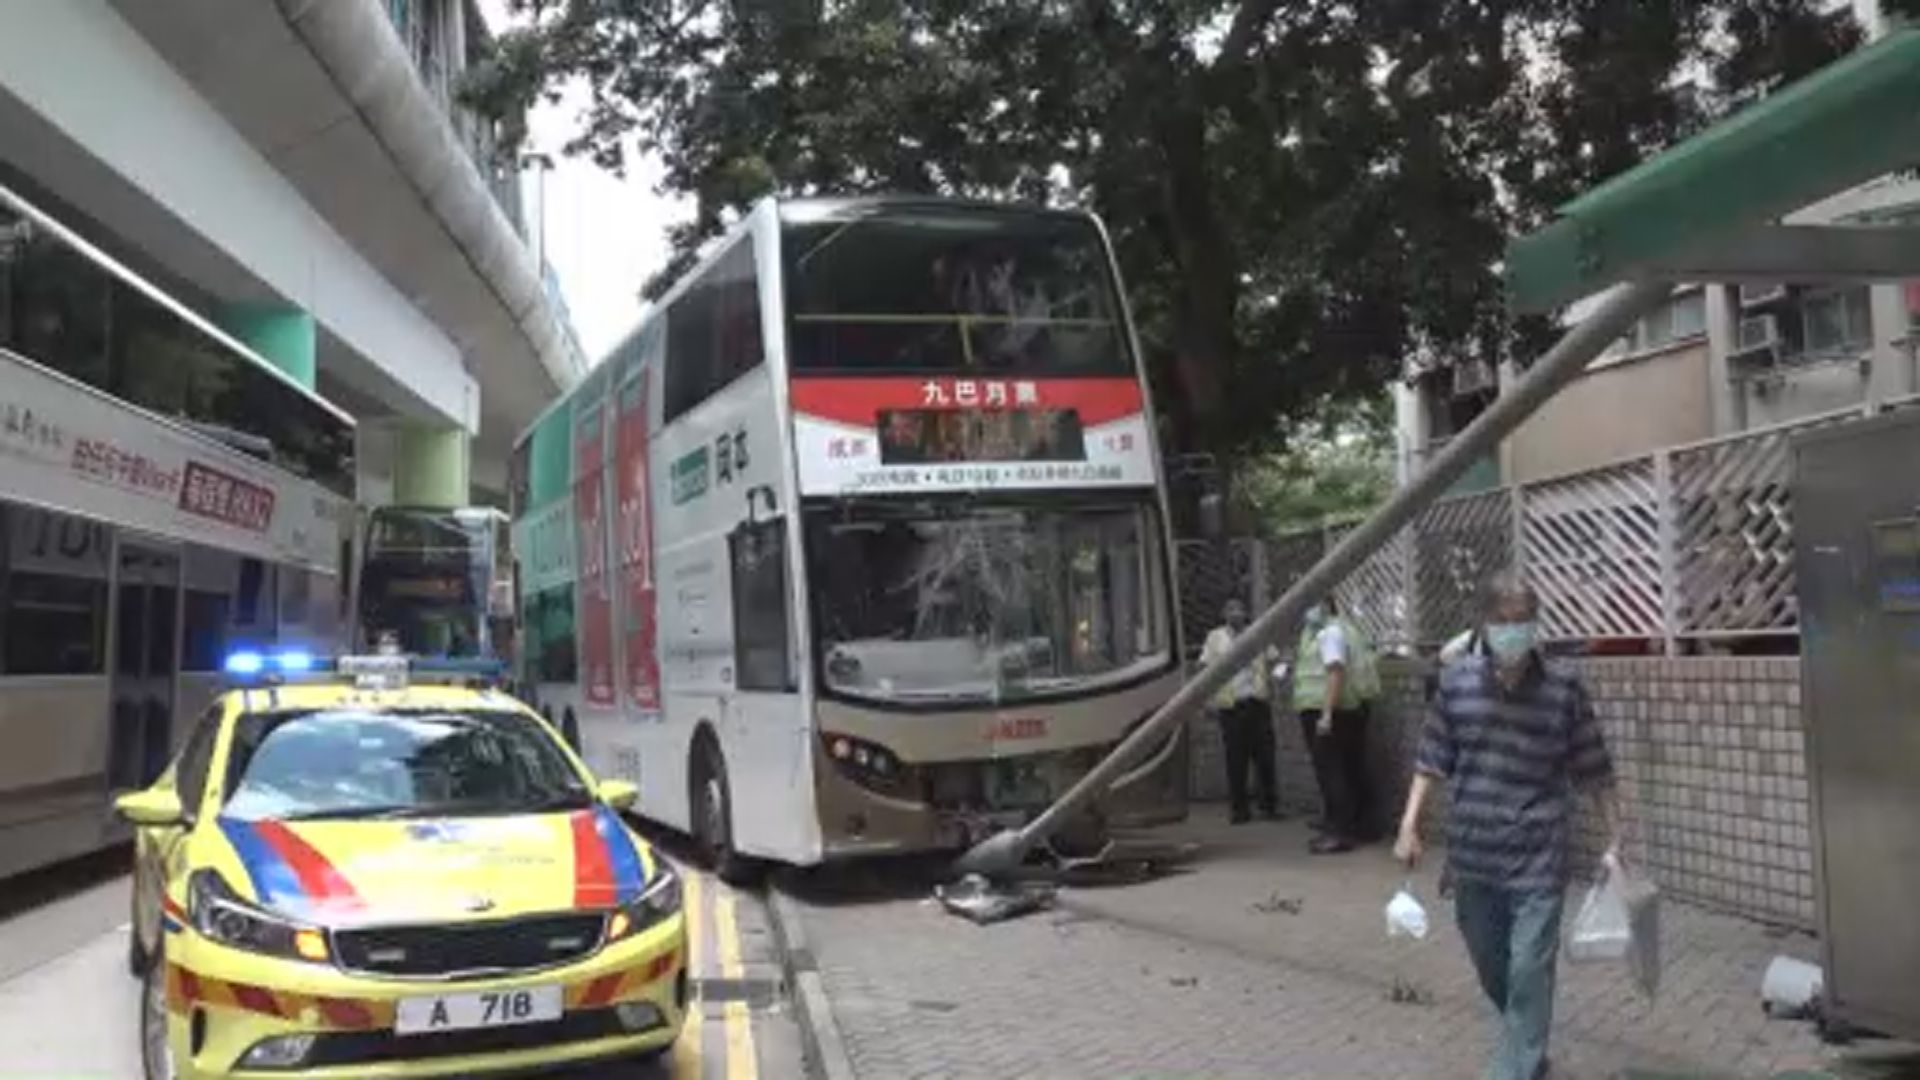 黃大仙巴士剷上行人路撞燈柱12人受傷